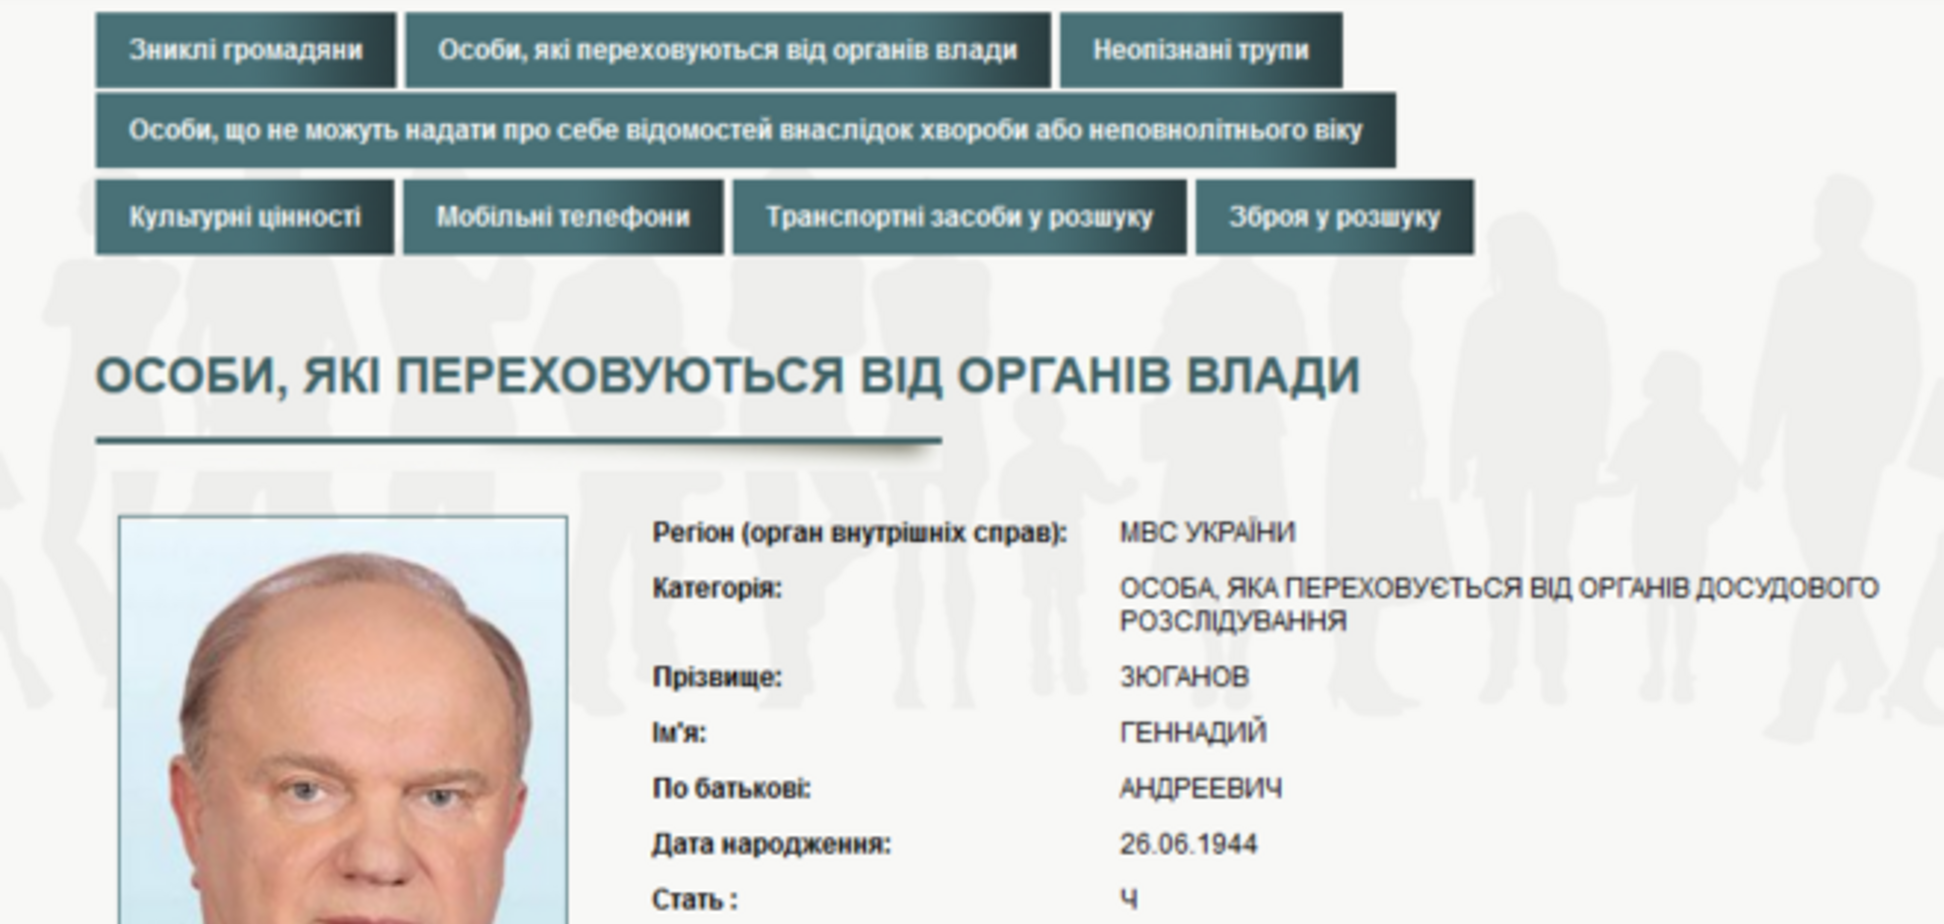 МВД Украины объявило в розыск Жириновского, Миронова и Зюганова